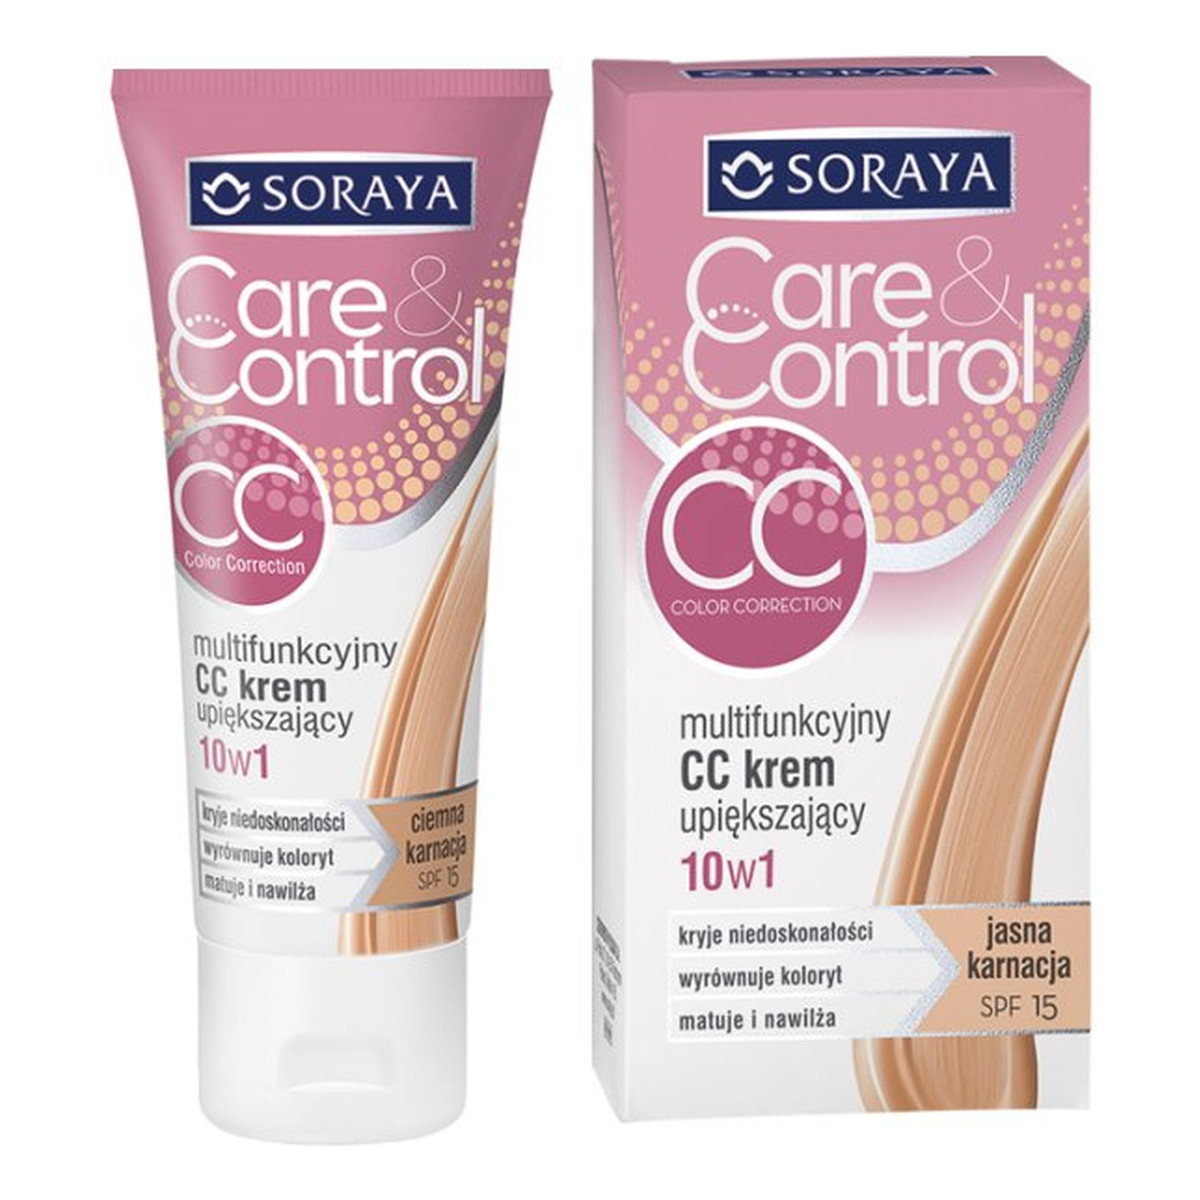 Soraya Care & Control Color Corretion Multifunkcyjny Upiększający Krem CC 10w1